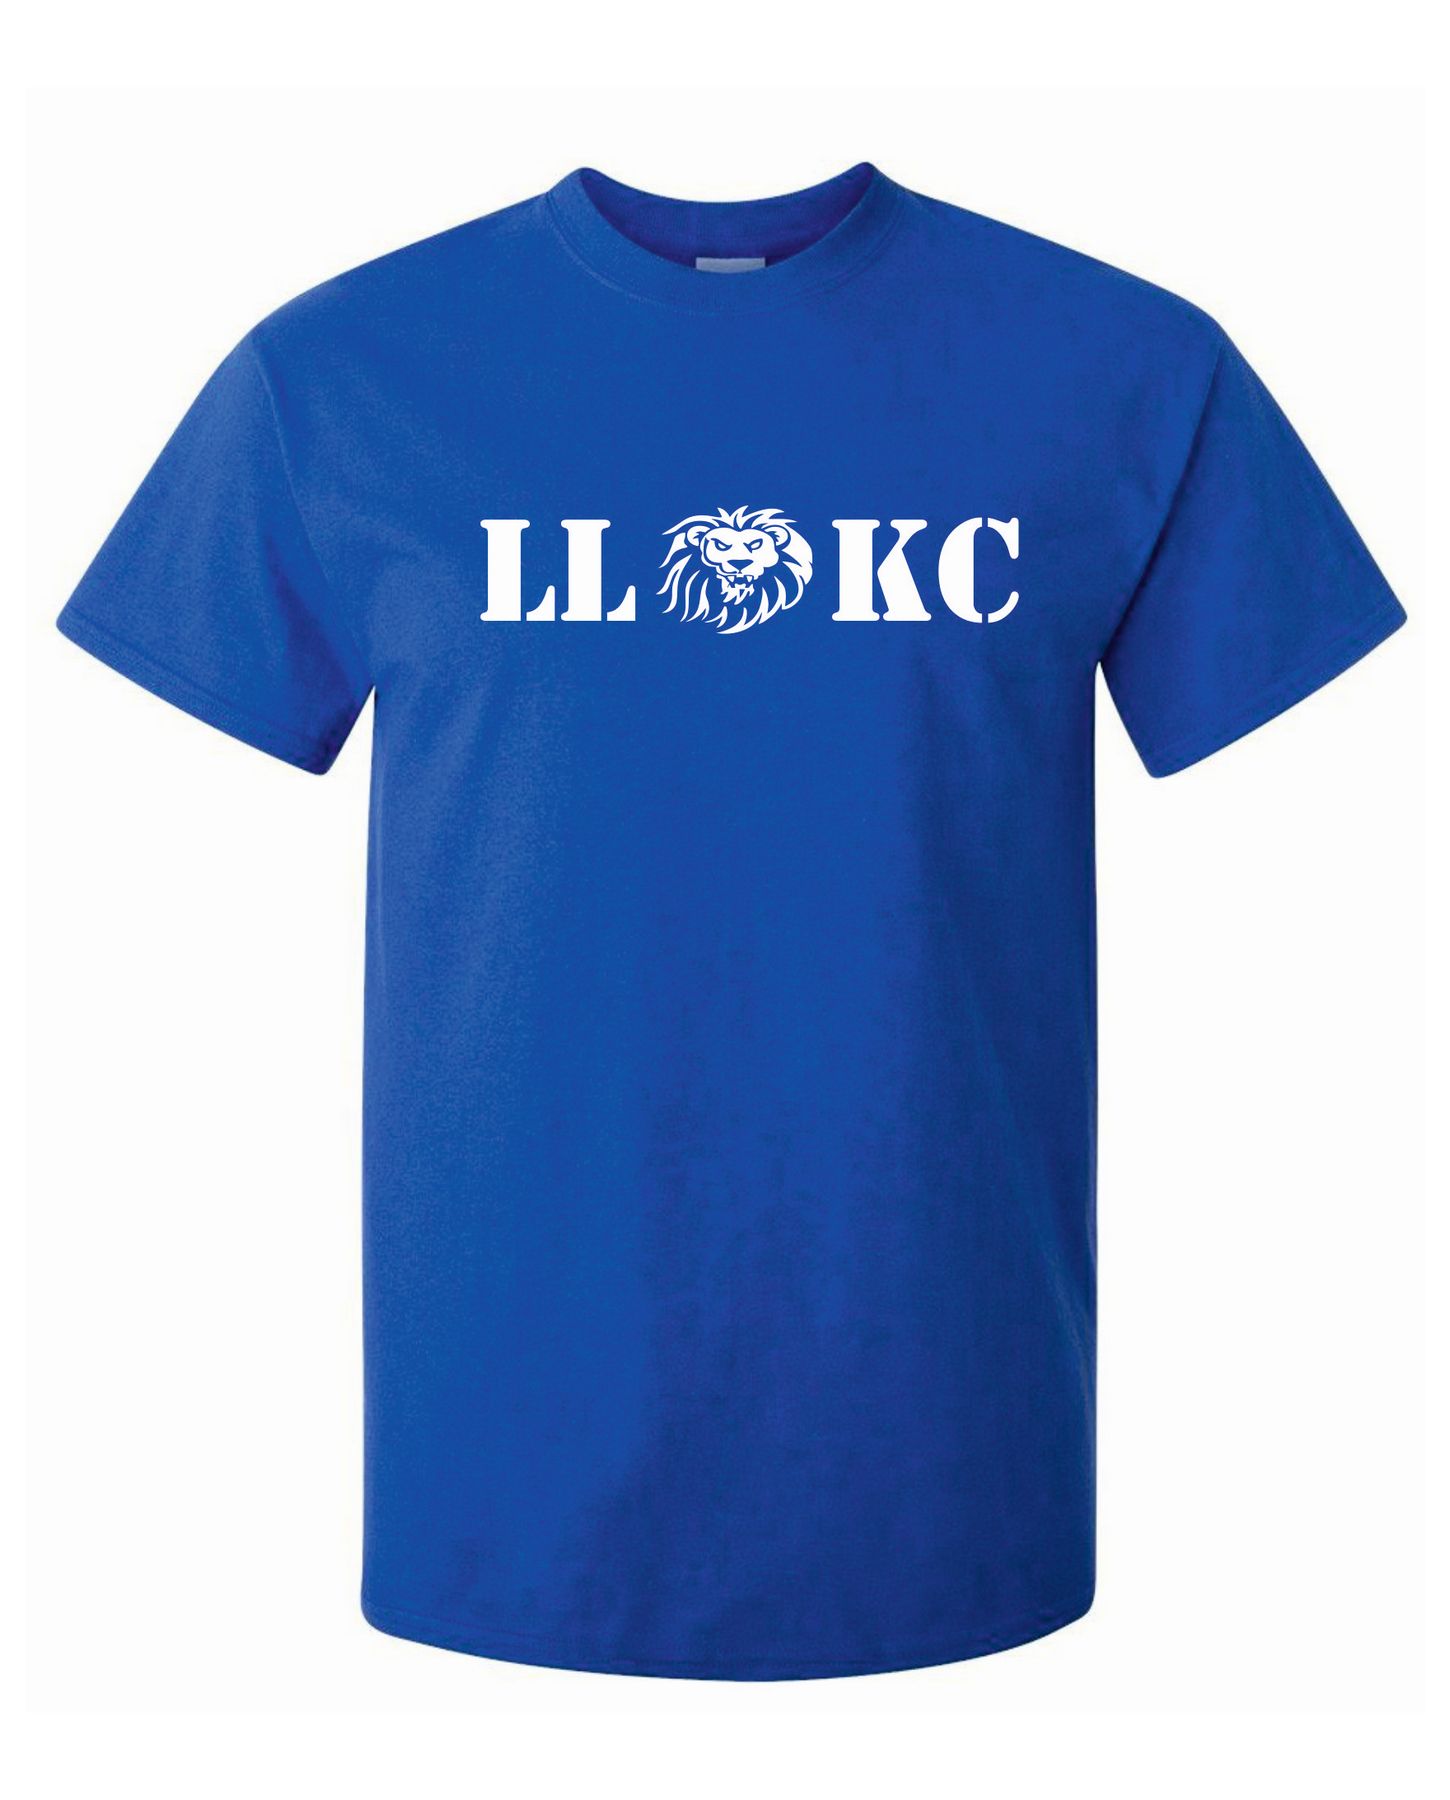 LLKC T Shirt